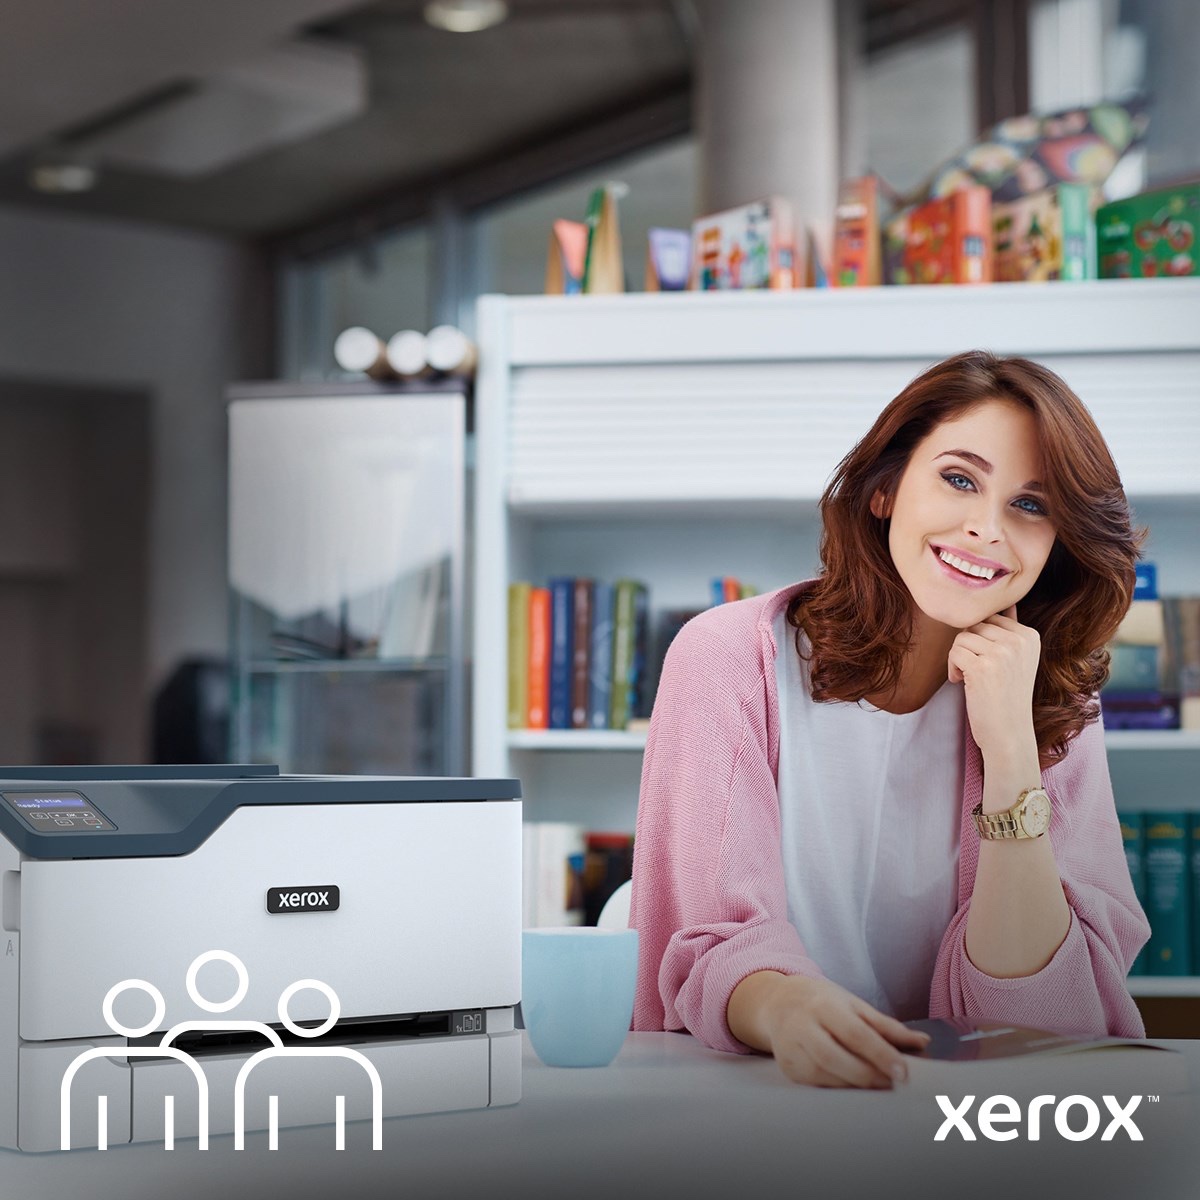 R-Store Annuncia una nuova partnership strategica con Xerox per la digital transformation documentale dei servizi di stampa